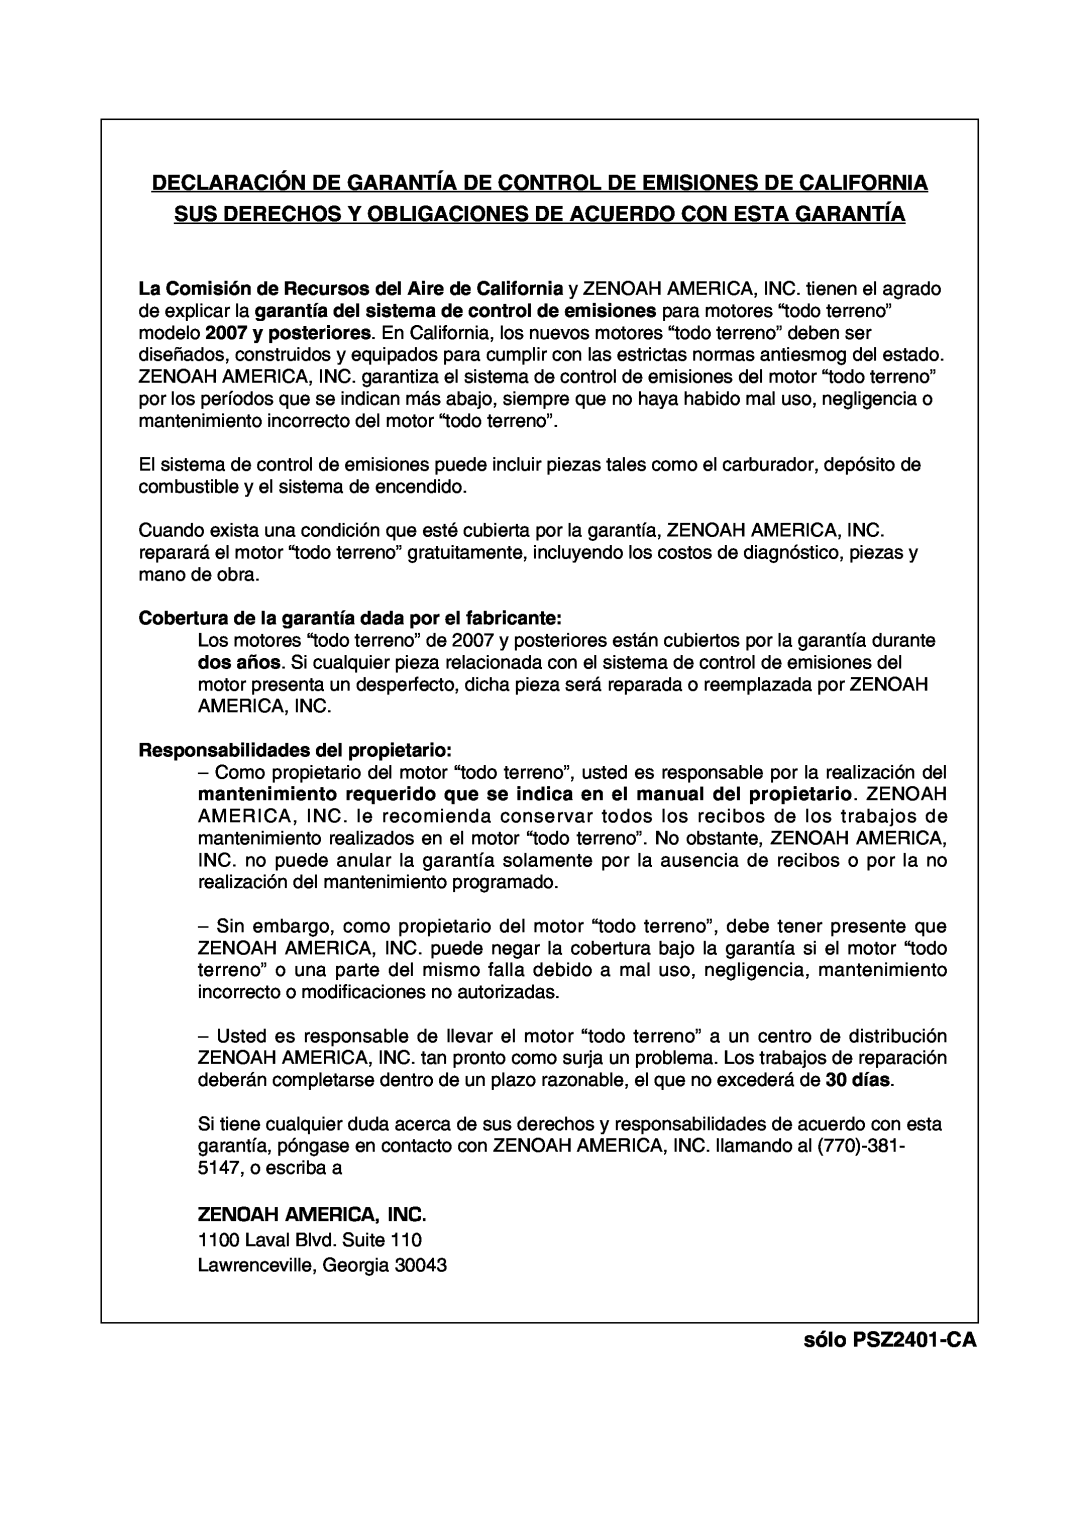 Zenoah manual Declaración De Garantía De Control De Emisiones De California, sólo PSZ2401-CA 